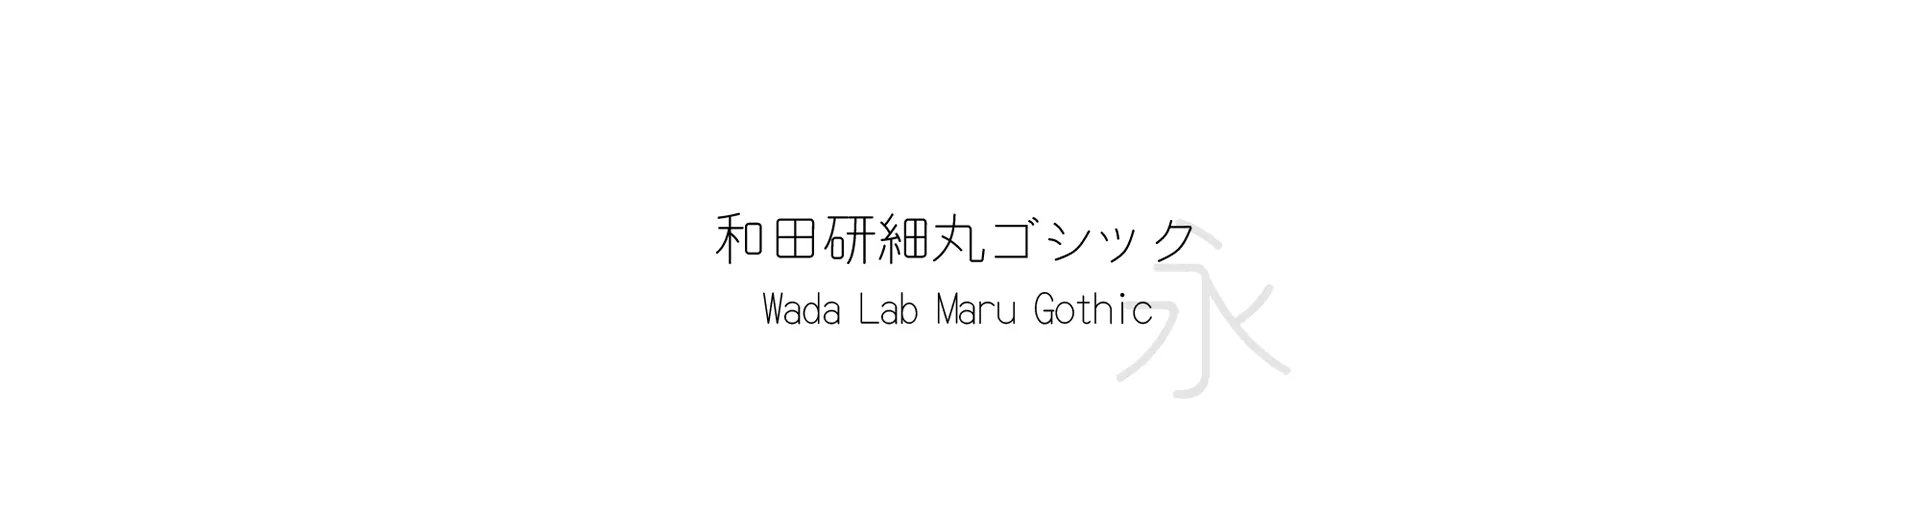 Wada Lab Maru Gothic